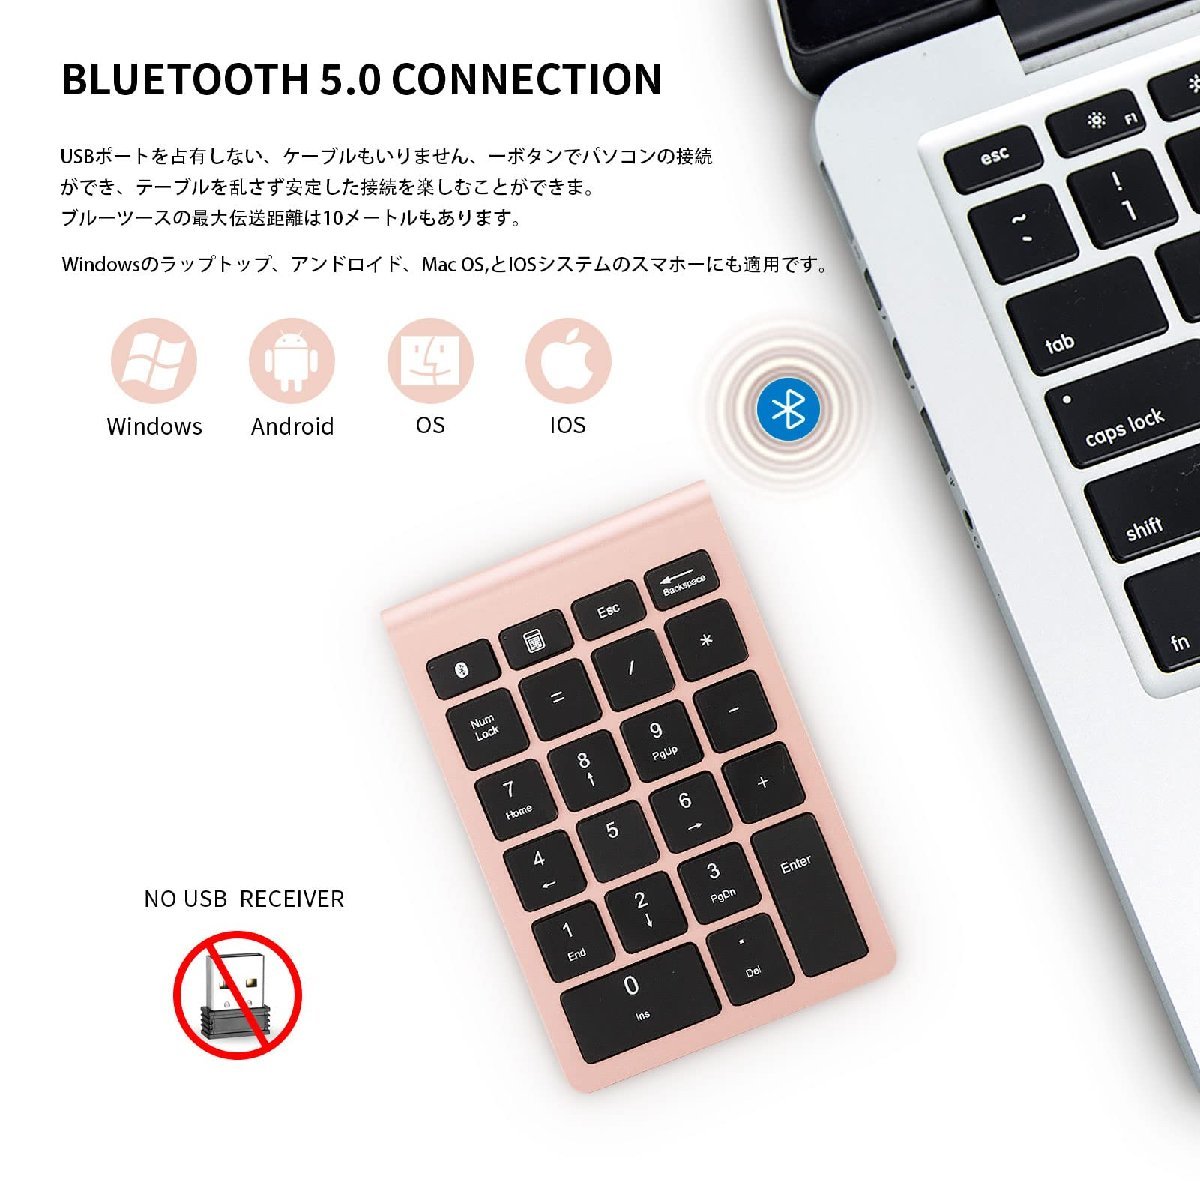  бесплатная доставка * число накладка 22 ключ портативный Mini финансовые дела отчетность численное значение клавиатура Bluetooth 5.0 клавиатура ( rose Gold )